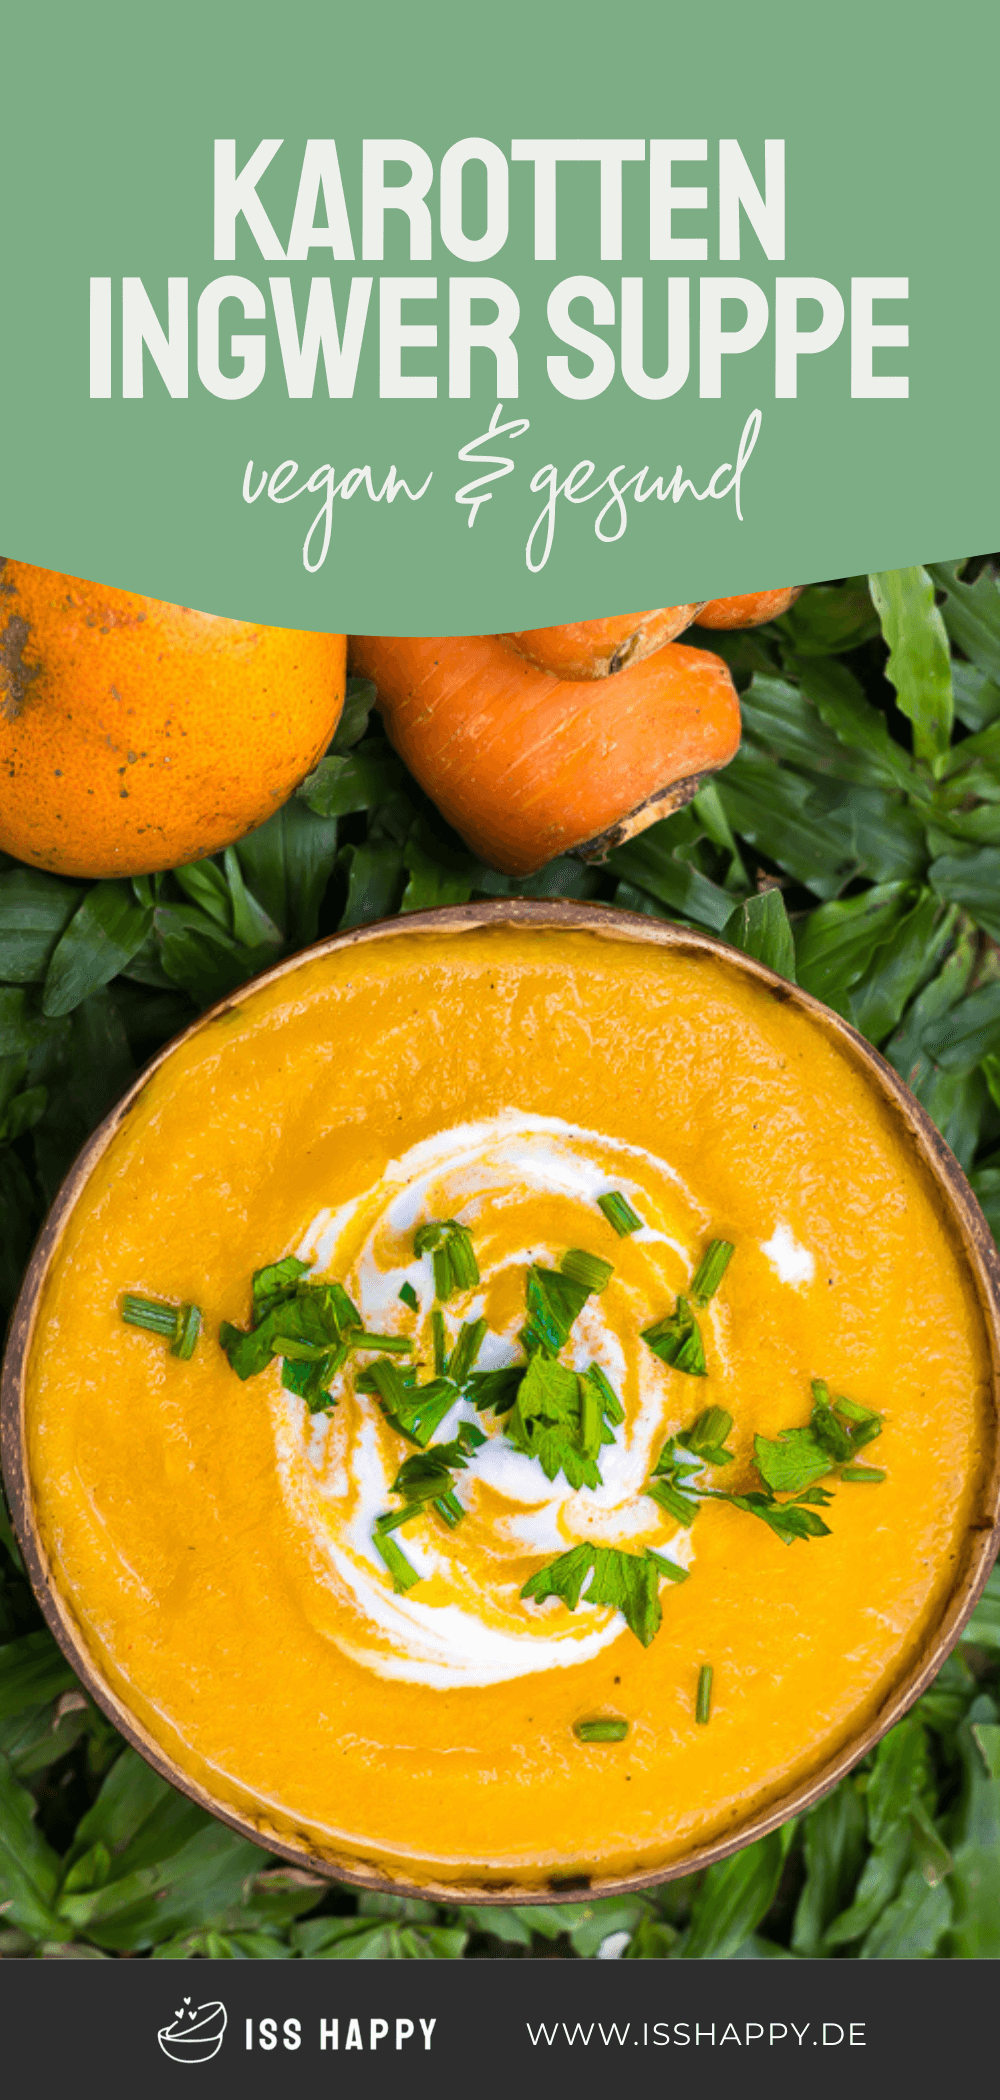 Karotten Ingwer Suppe mit Orange - vegan, gesund & lecker!